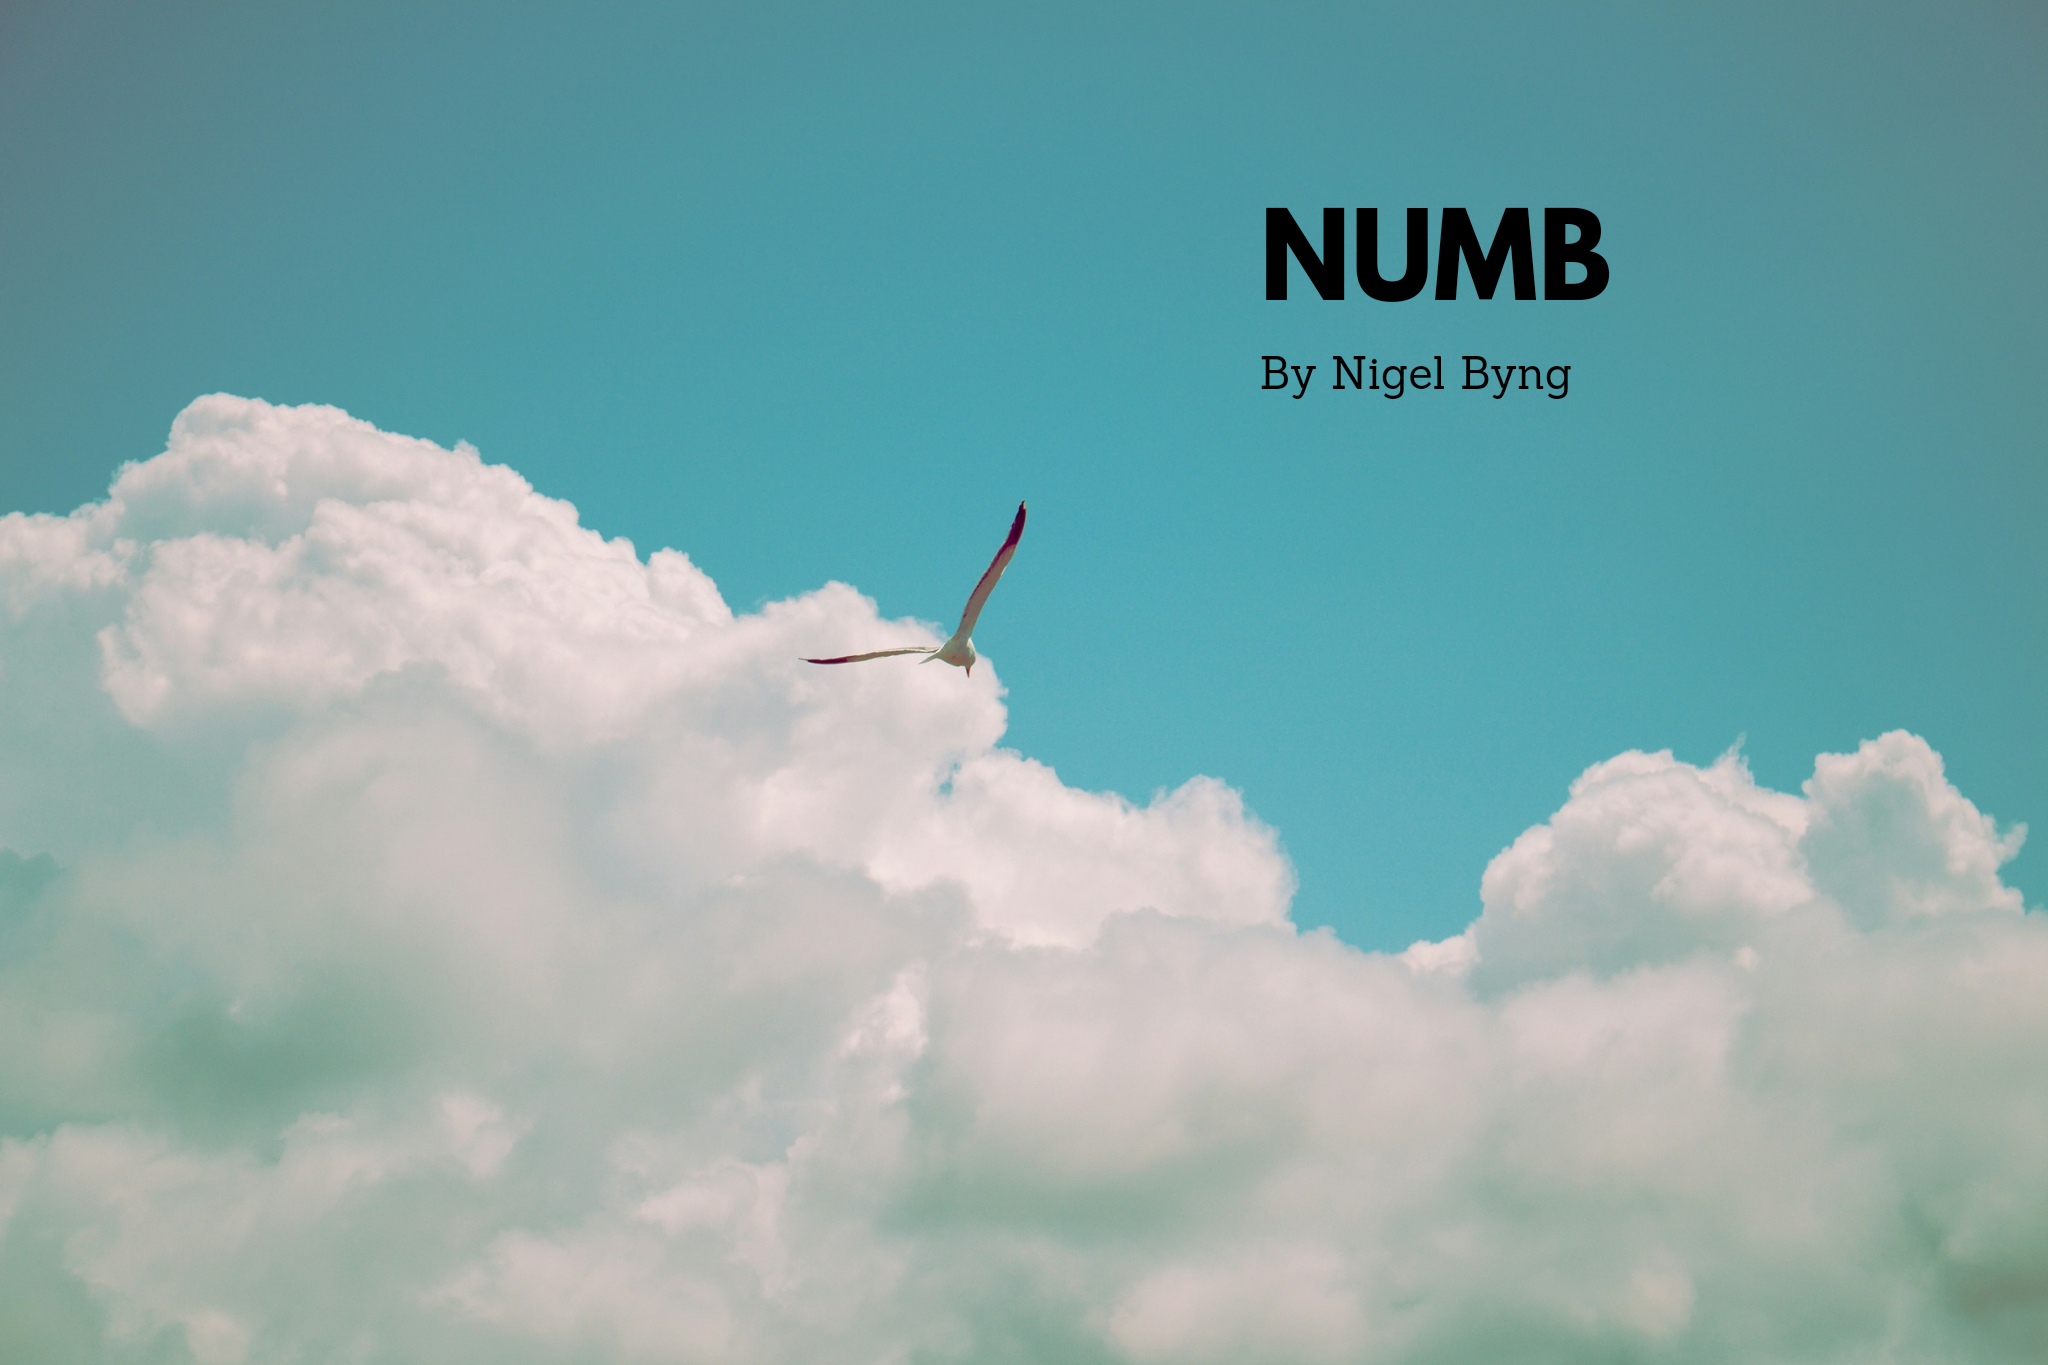 Numb by Nigel Byng